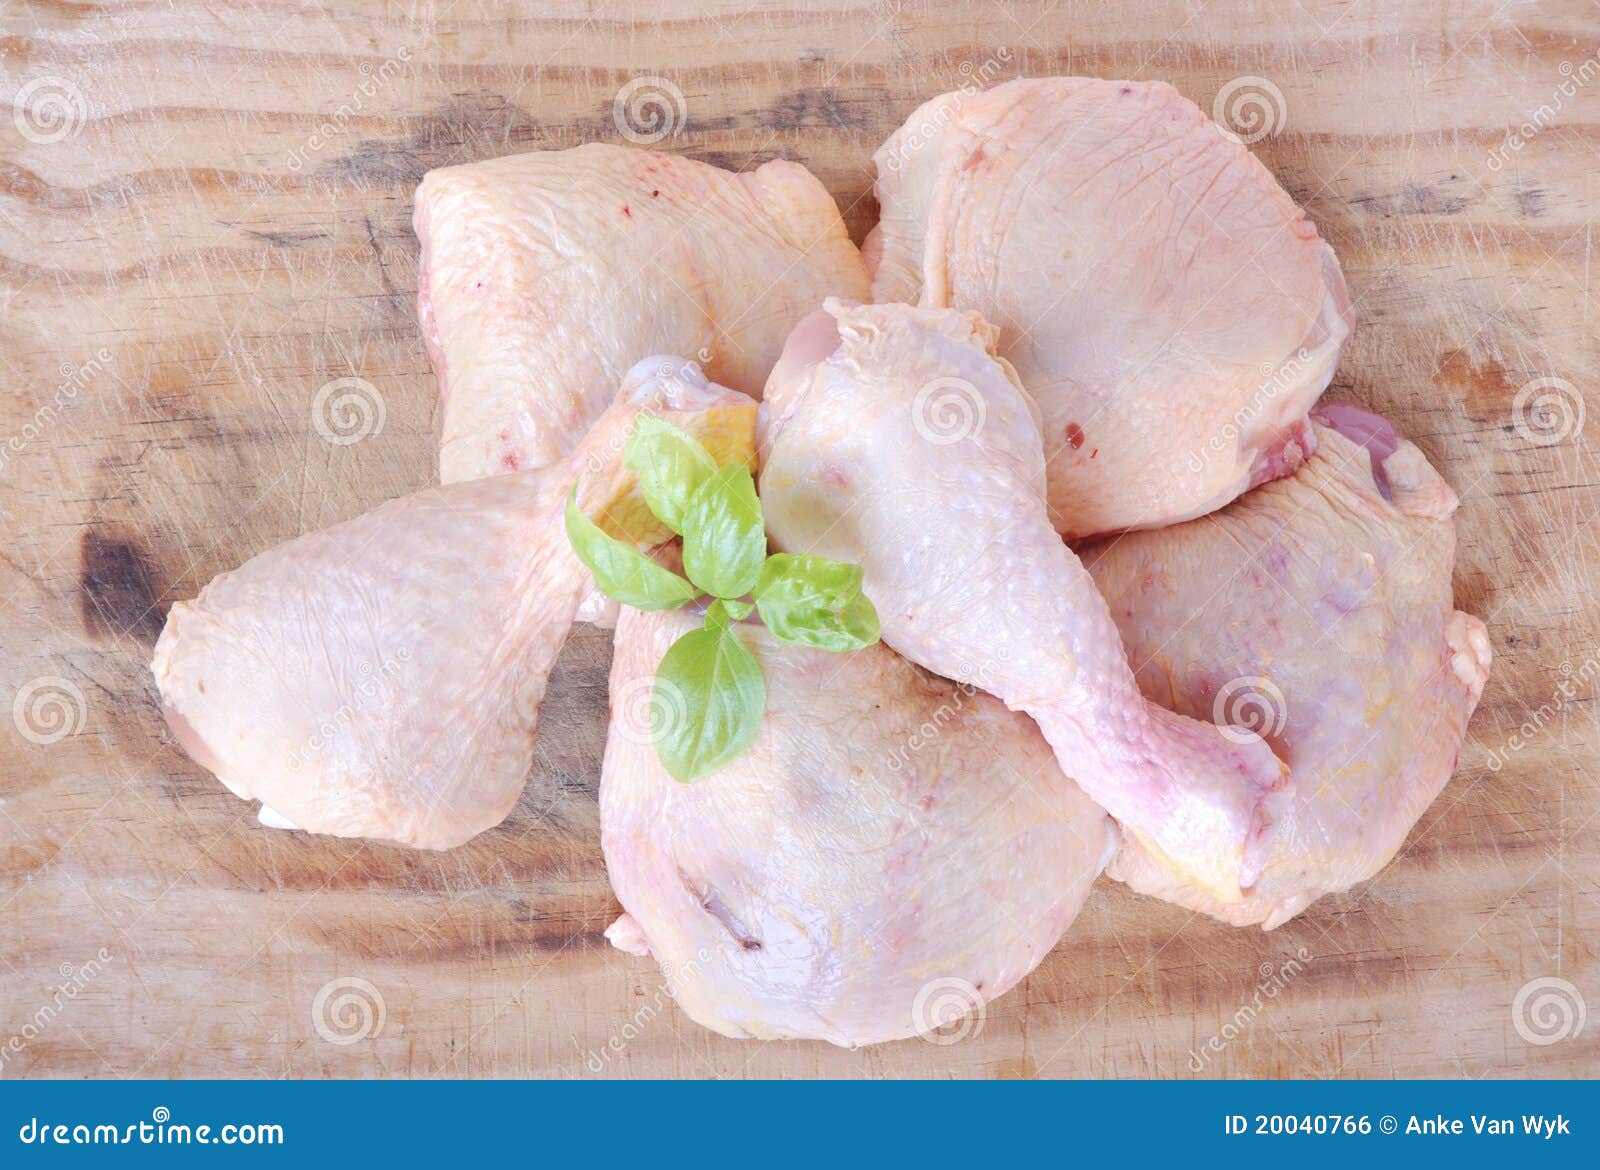 raw chicken pieces